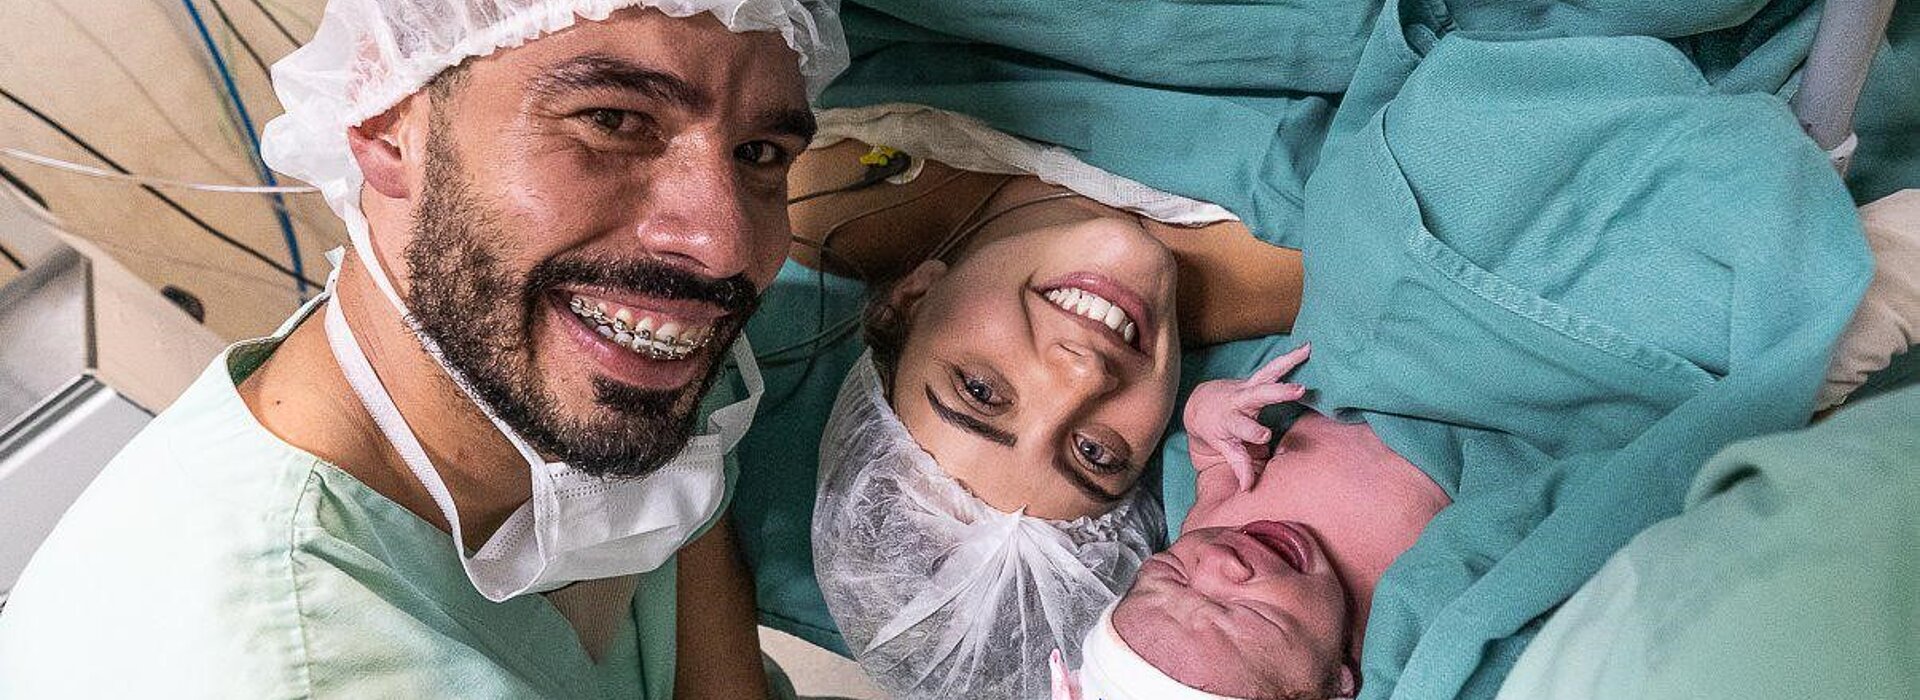 Daniel Dias, sua esposa e sua filha recém-nascida com roupas hospitalares verdes